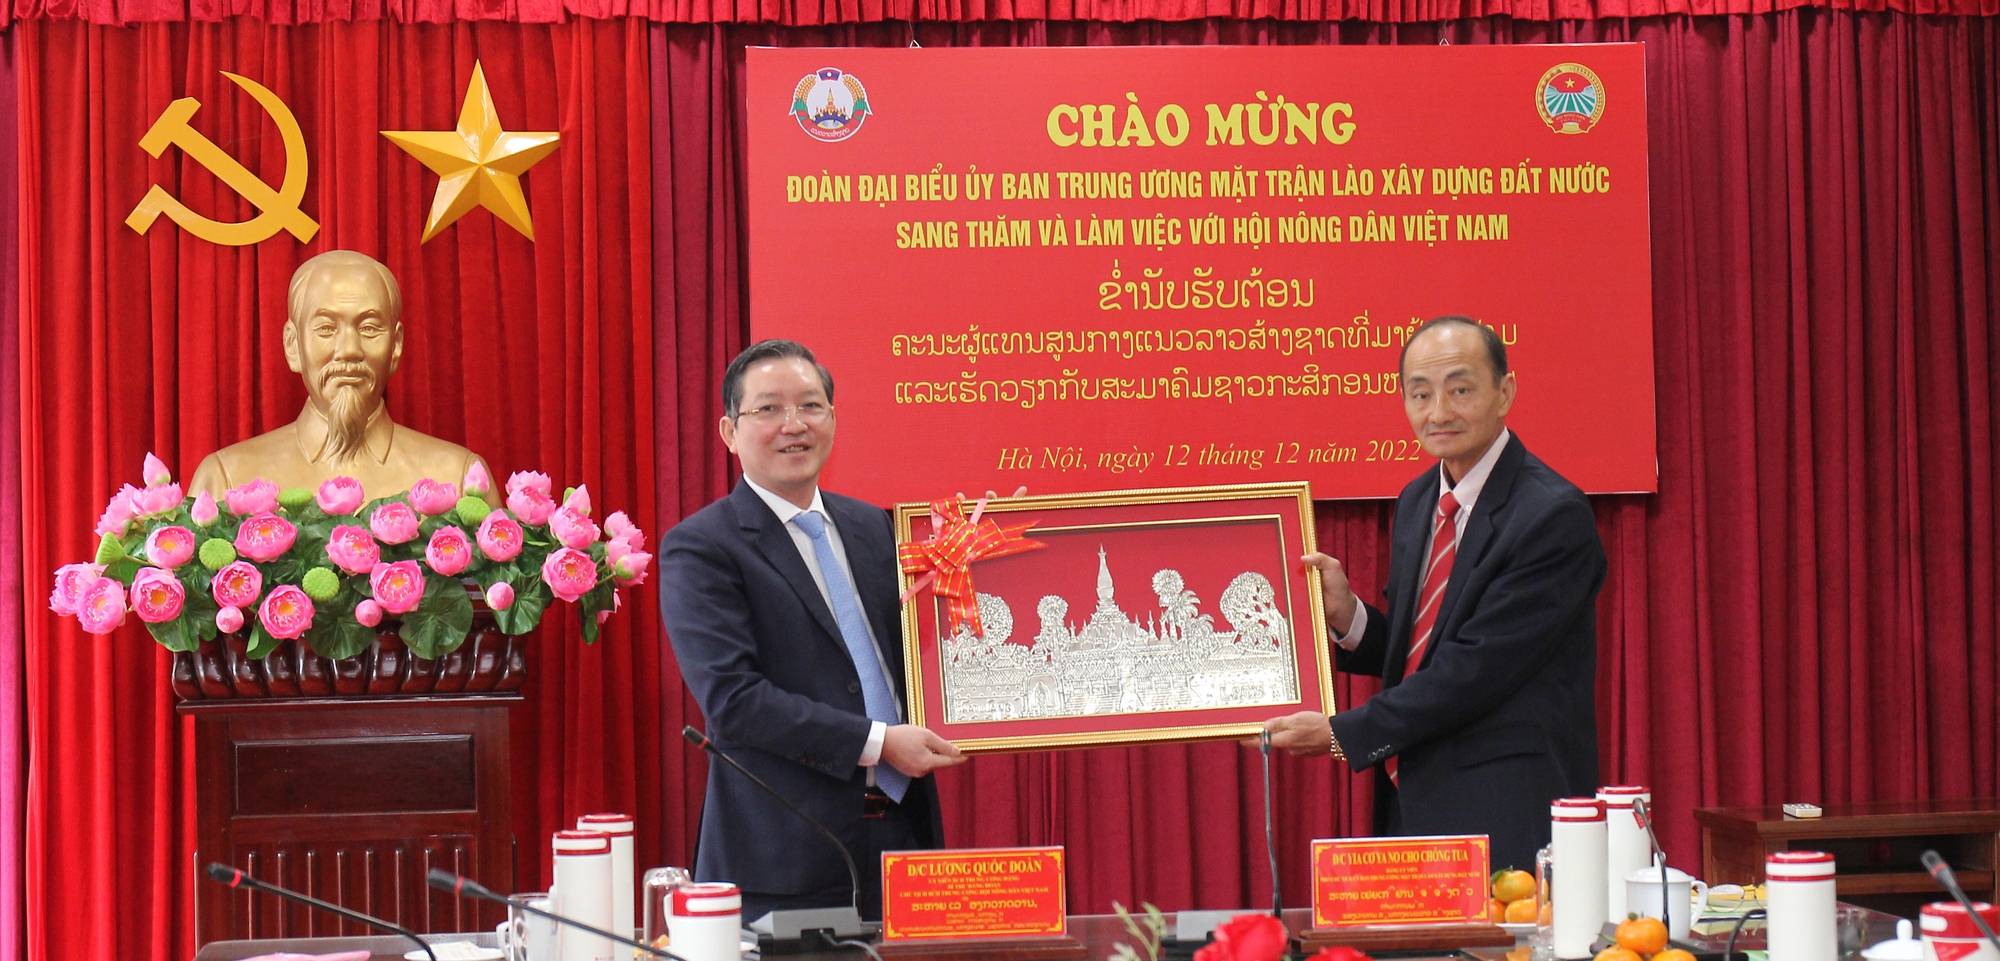 Chủ tịch Hội NDVN Lương Quốc Đoàn trao đổi kinh nghiệm công tác Hội với Trung ương Mặt trận Lào xây dựng đất nước - Ảnh 2.